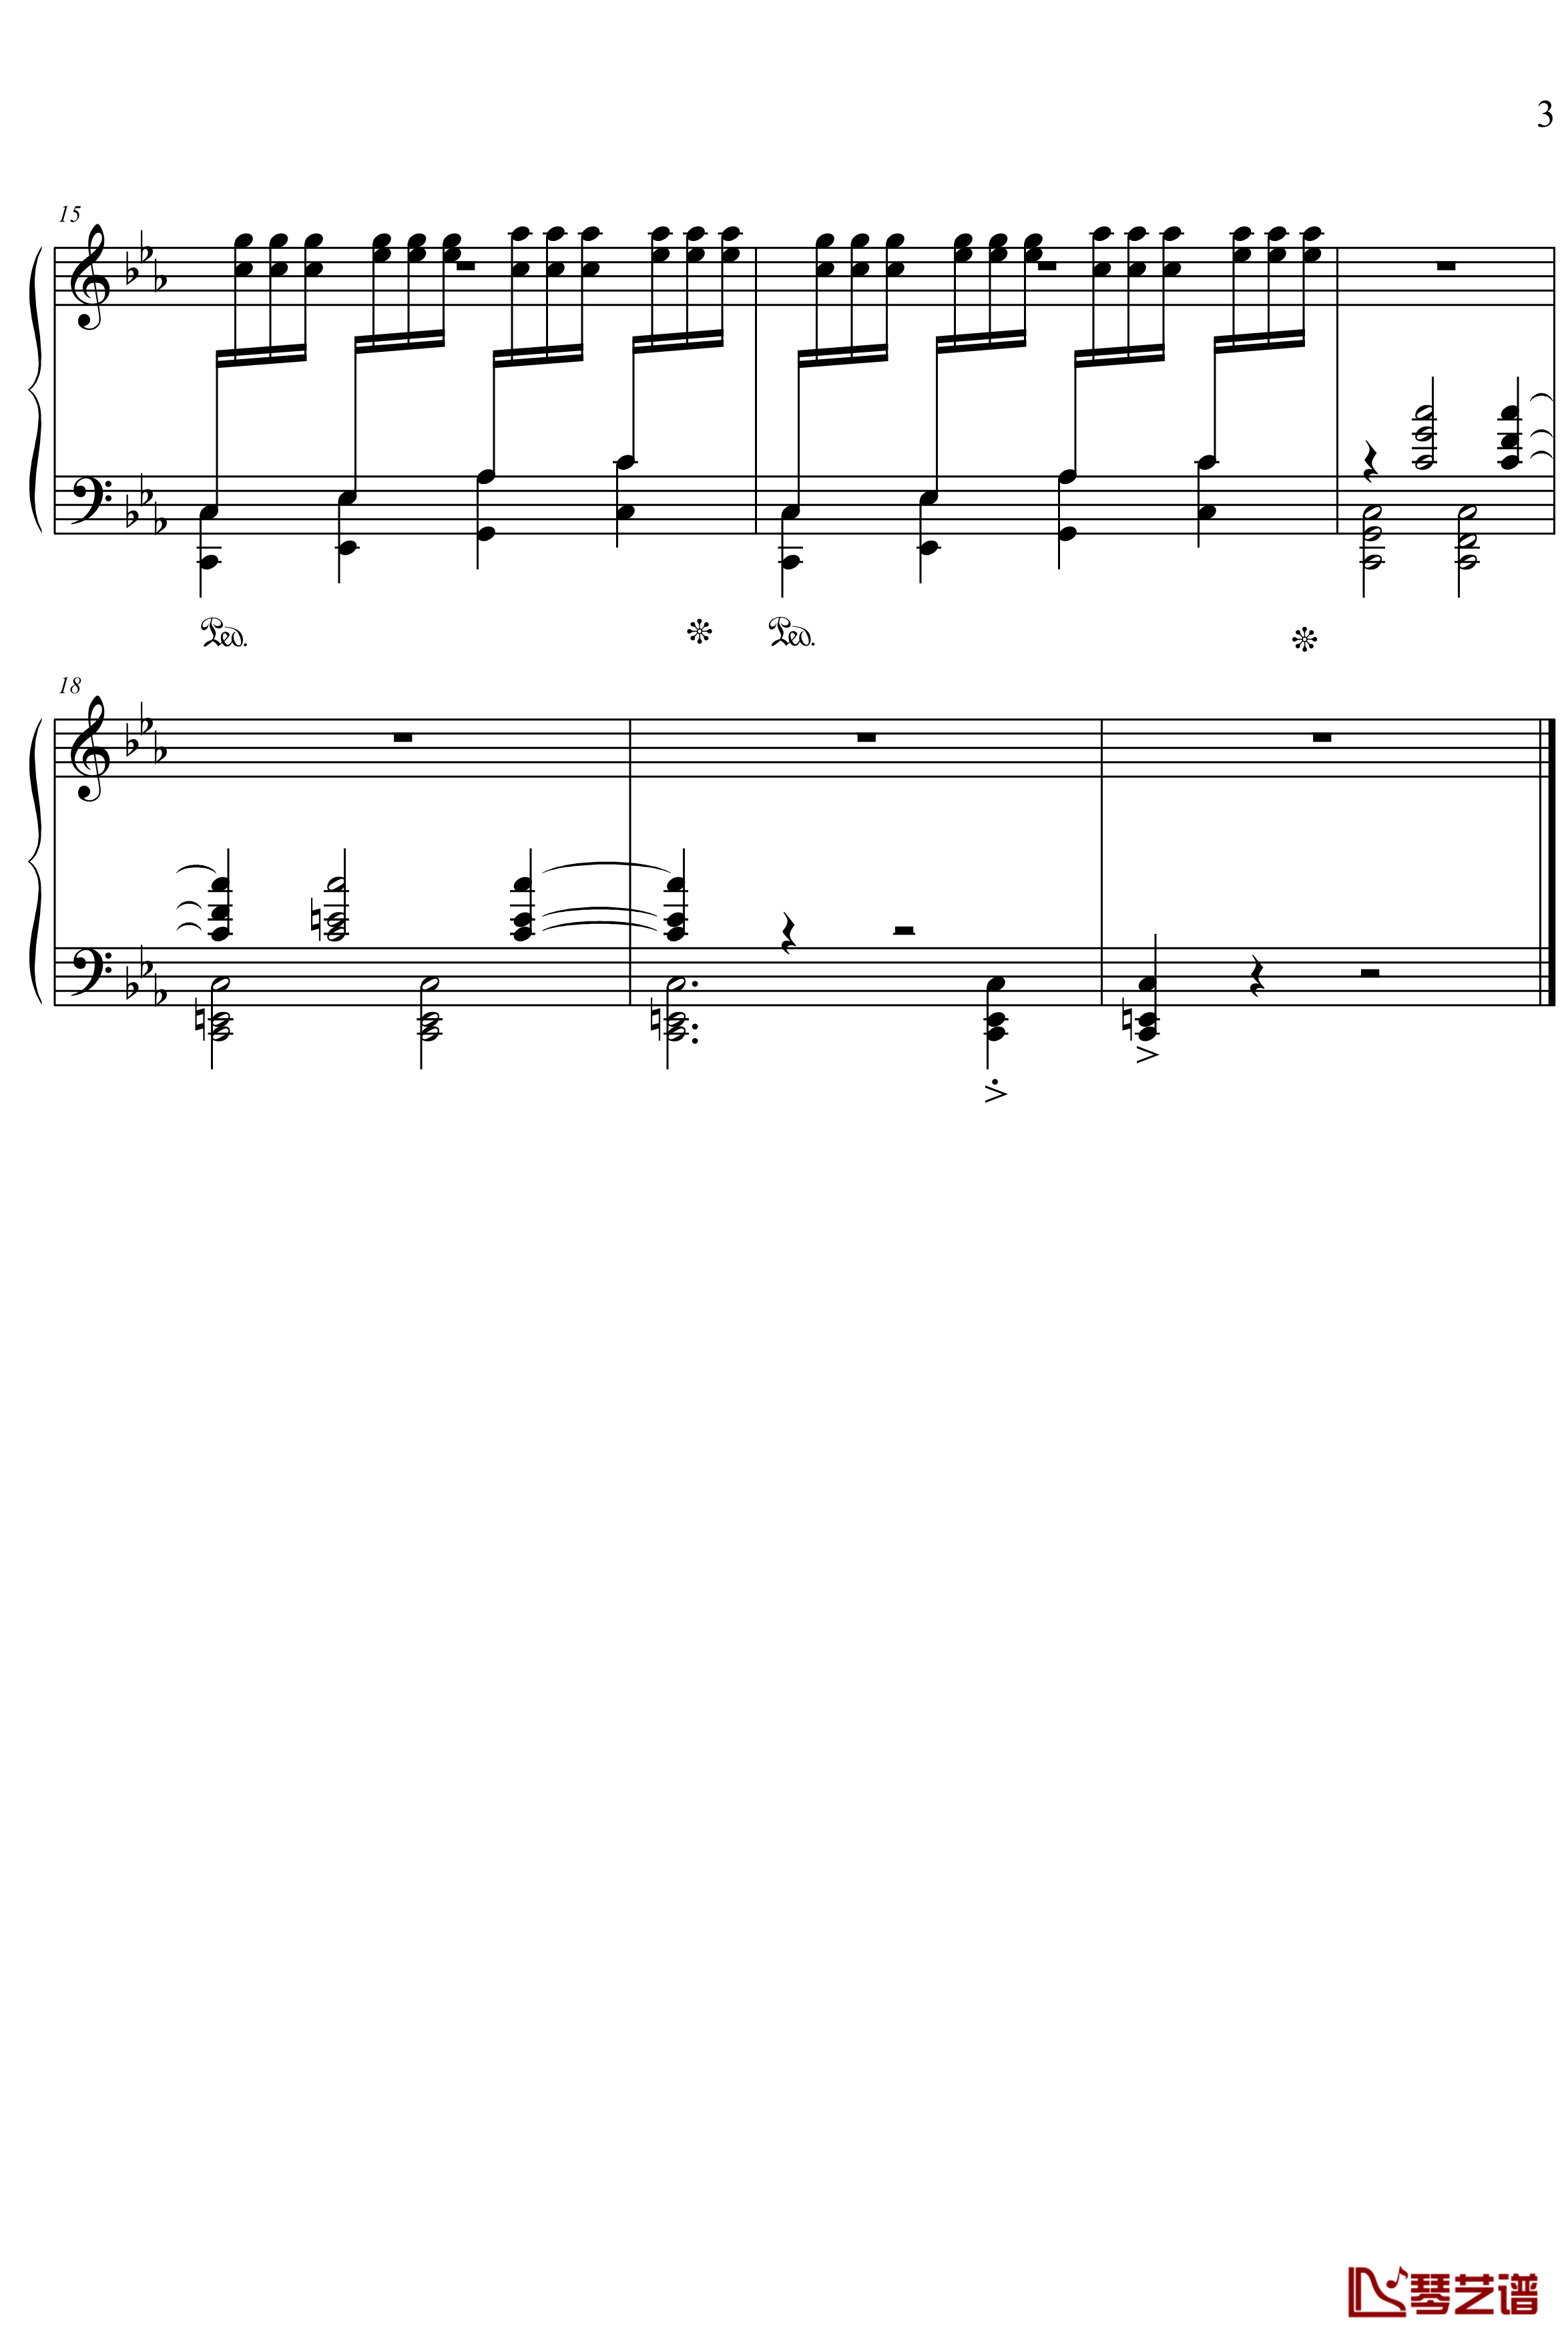 练习曲之激愤的左手钢琴谱-超越MB3